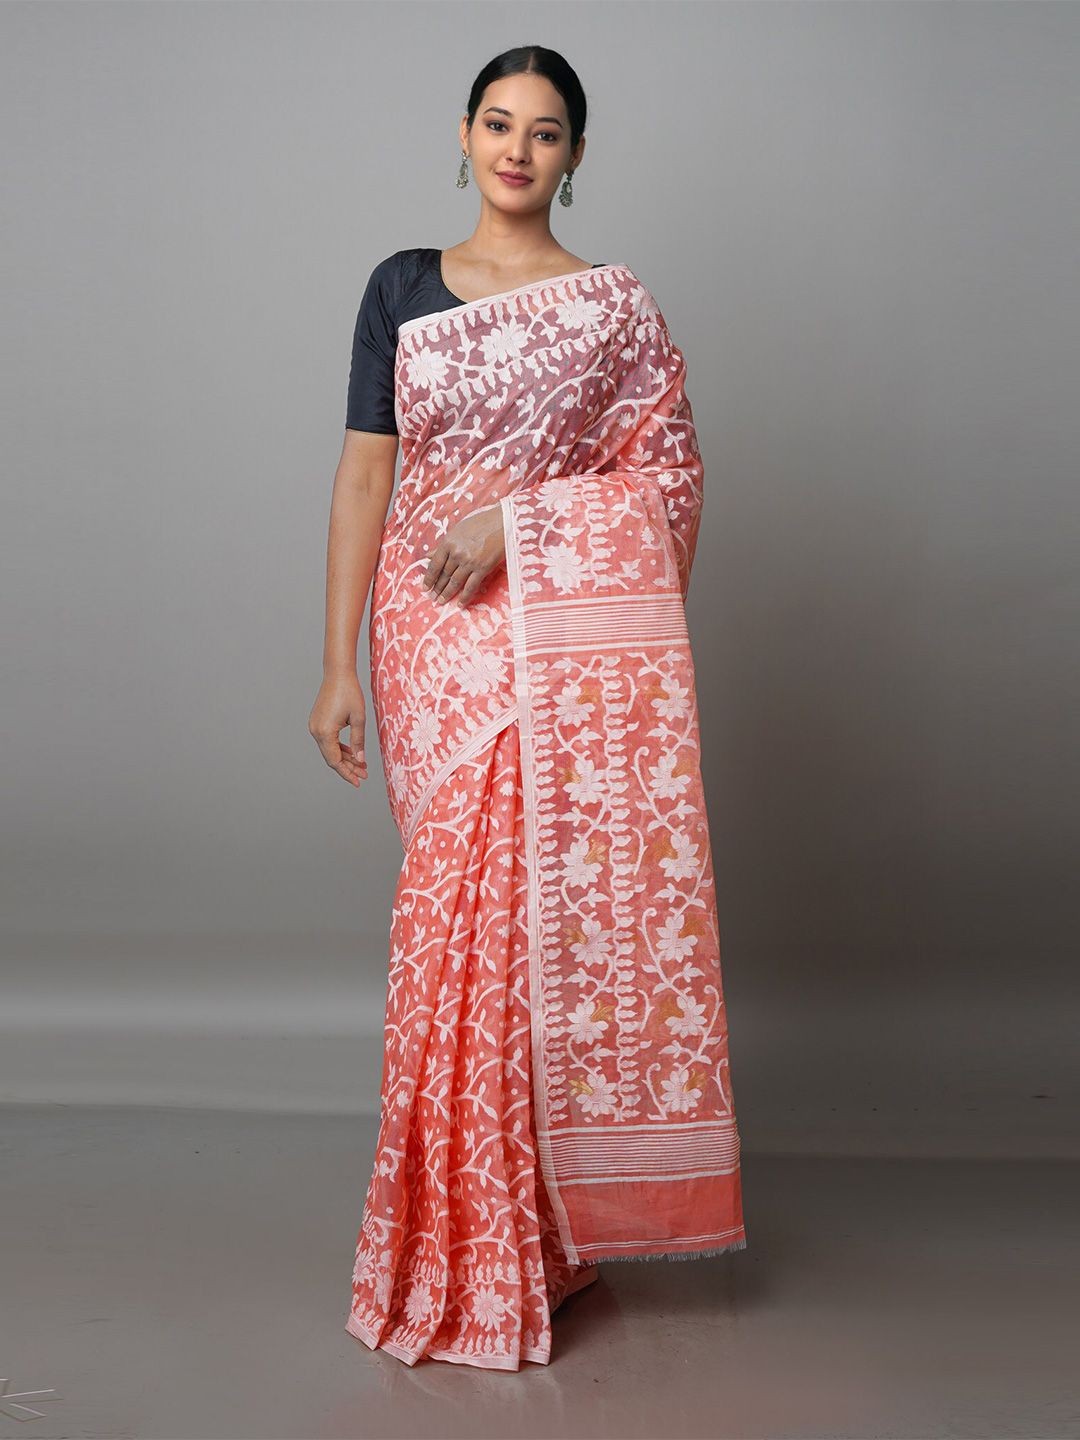 Unnati Silks Peach-Coloured & White Floral Pure Cotton Jamdani Saree Price in India